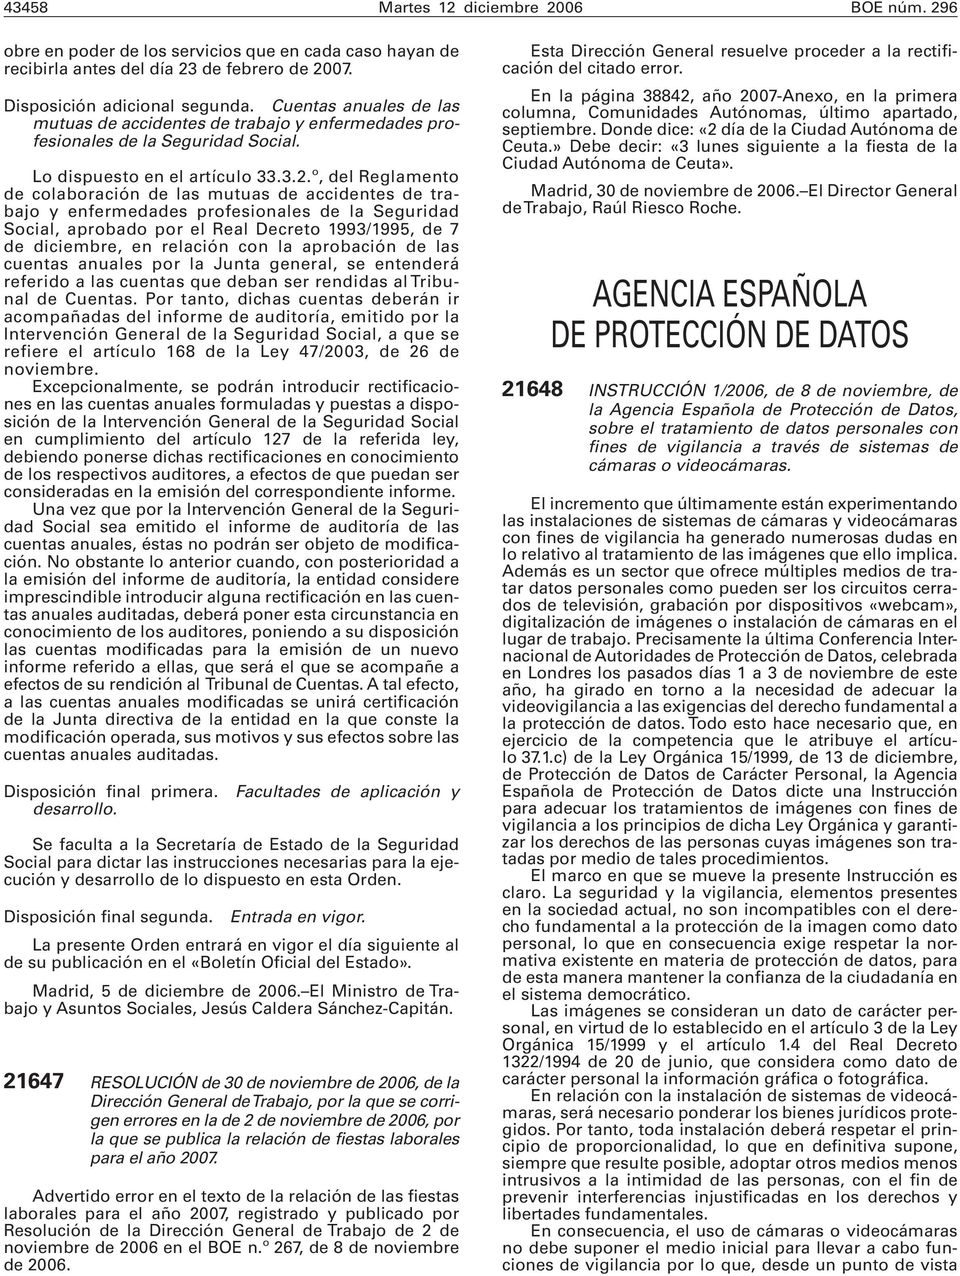 º, del Reglamento de colaboración de las mutuas de accidentes de trabajo y enfermedades profesionales de la Seguridad Social, aprobado por el Real Decreto 1993/1995, de 7 de diciembre, en relación